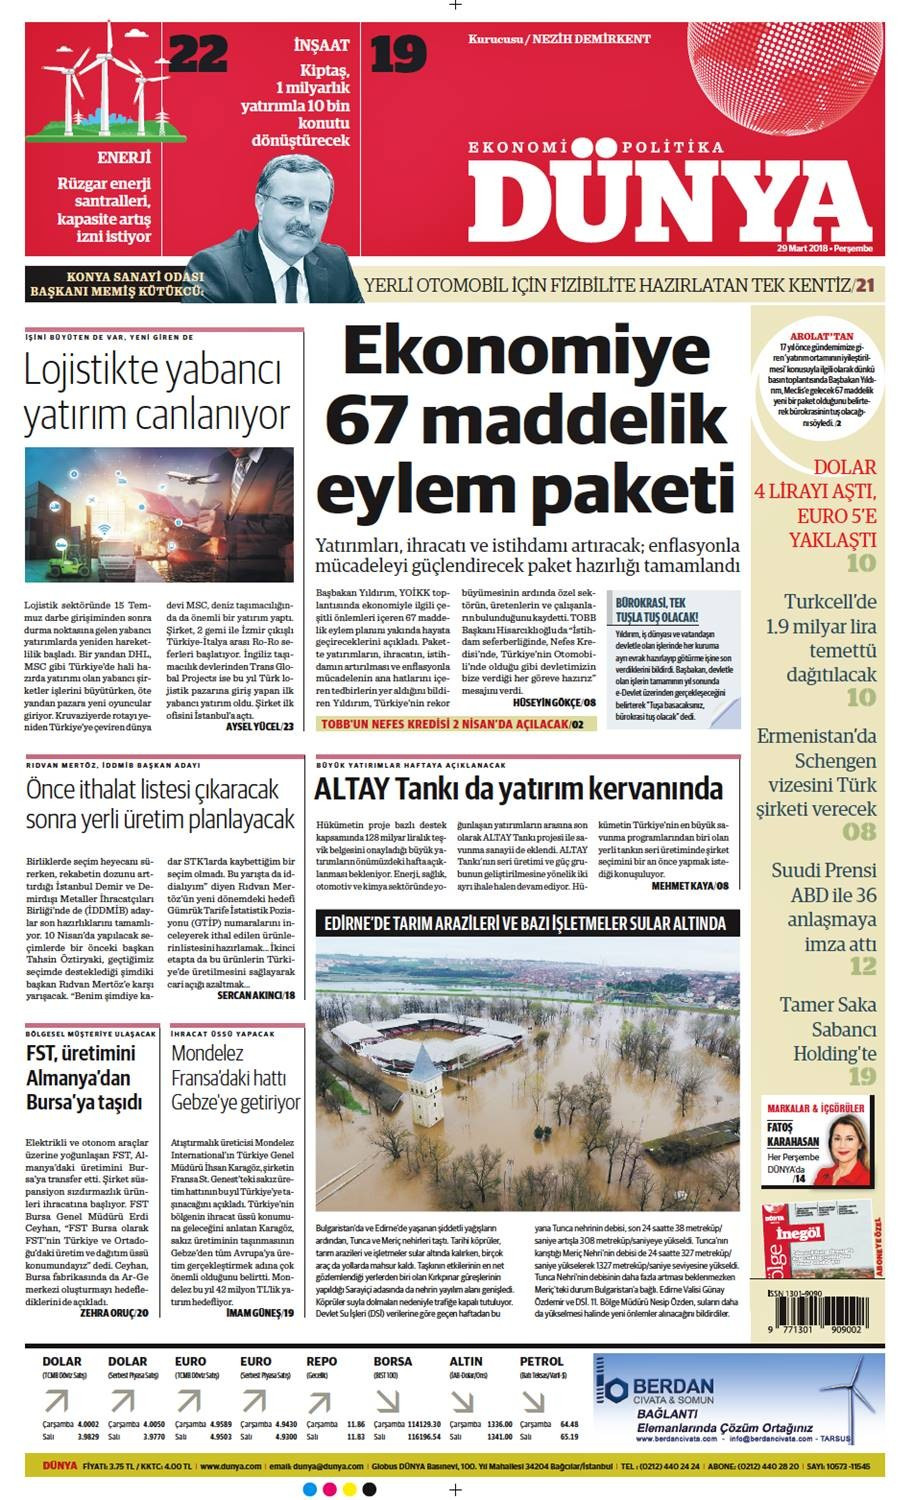 Günün gazete manşetleri (29.03.2018) - Sayfa 1